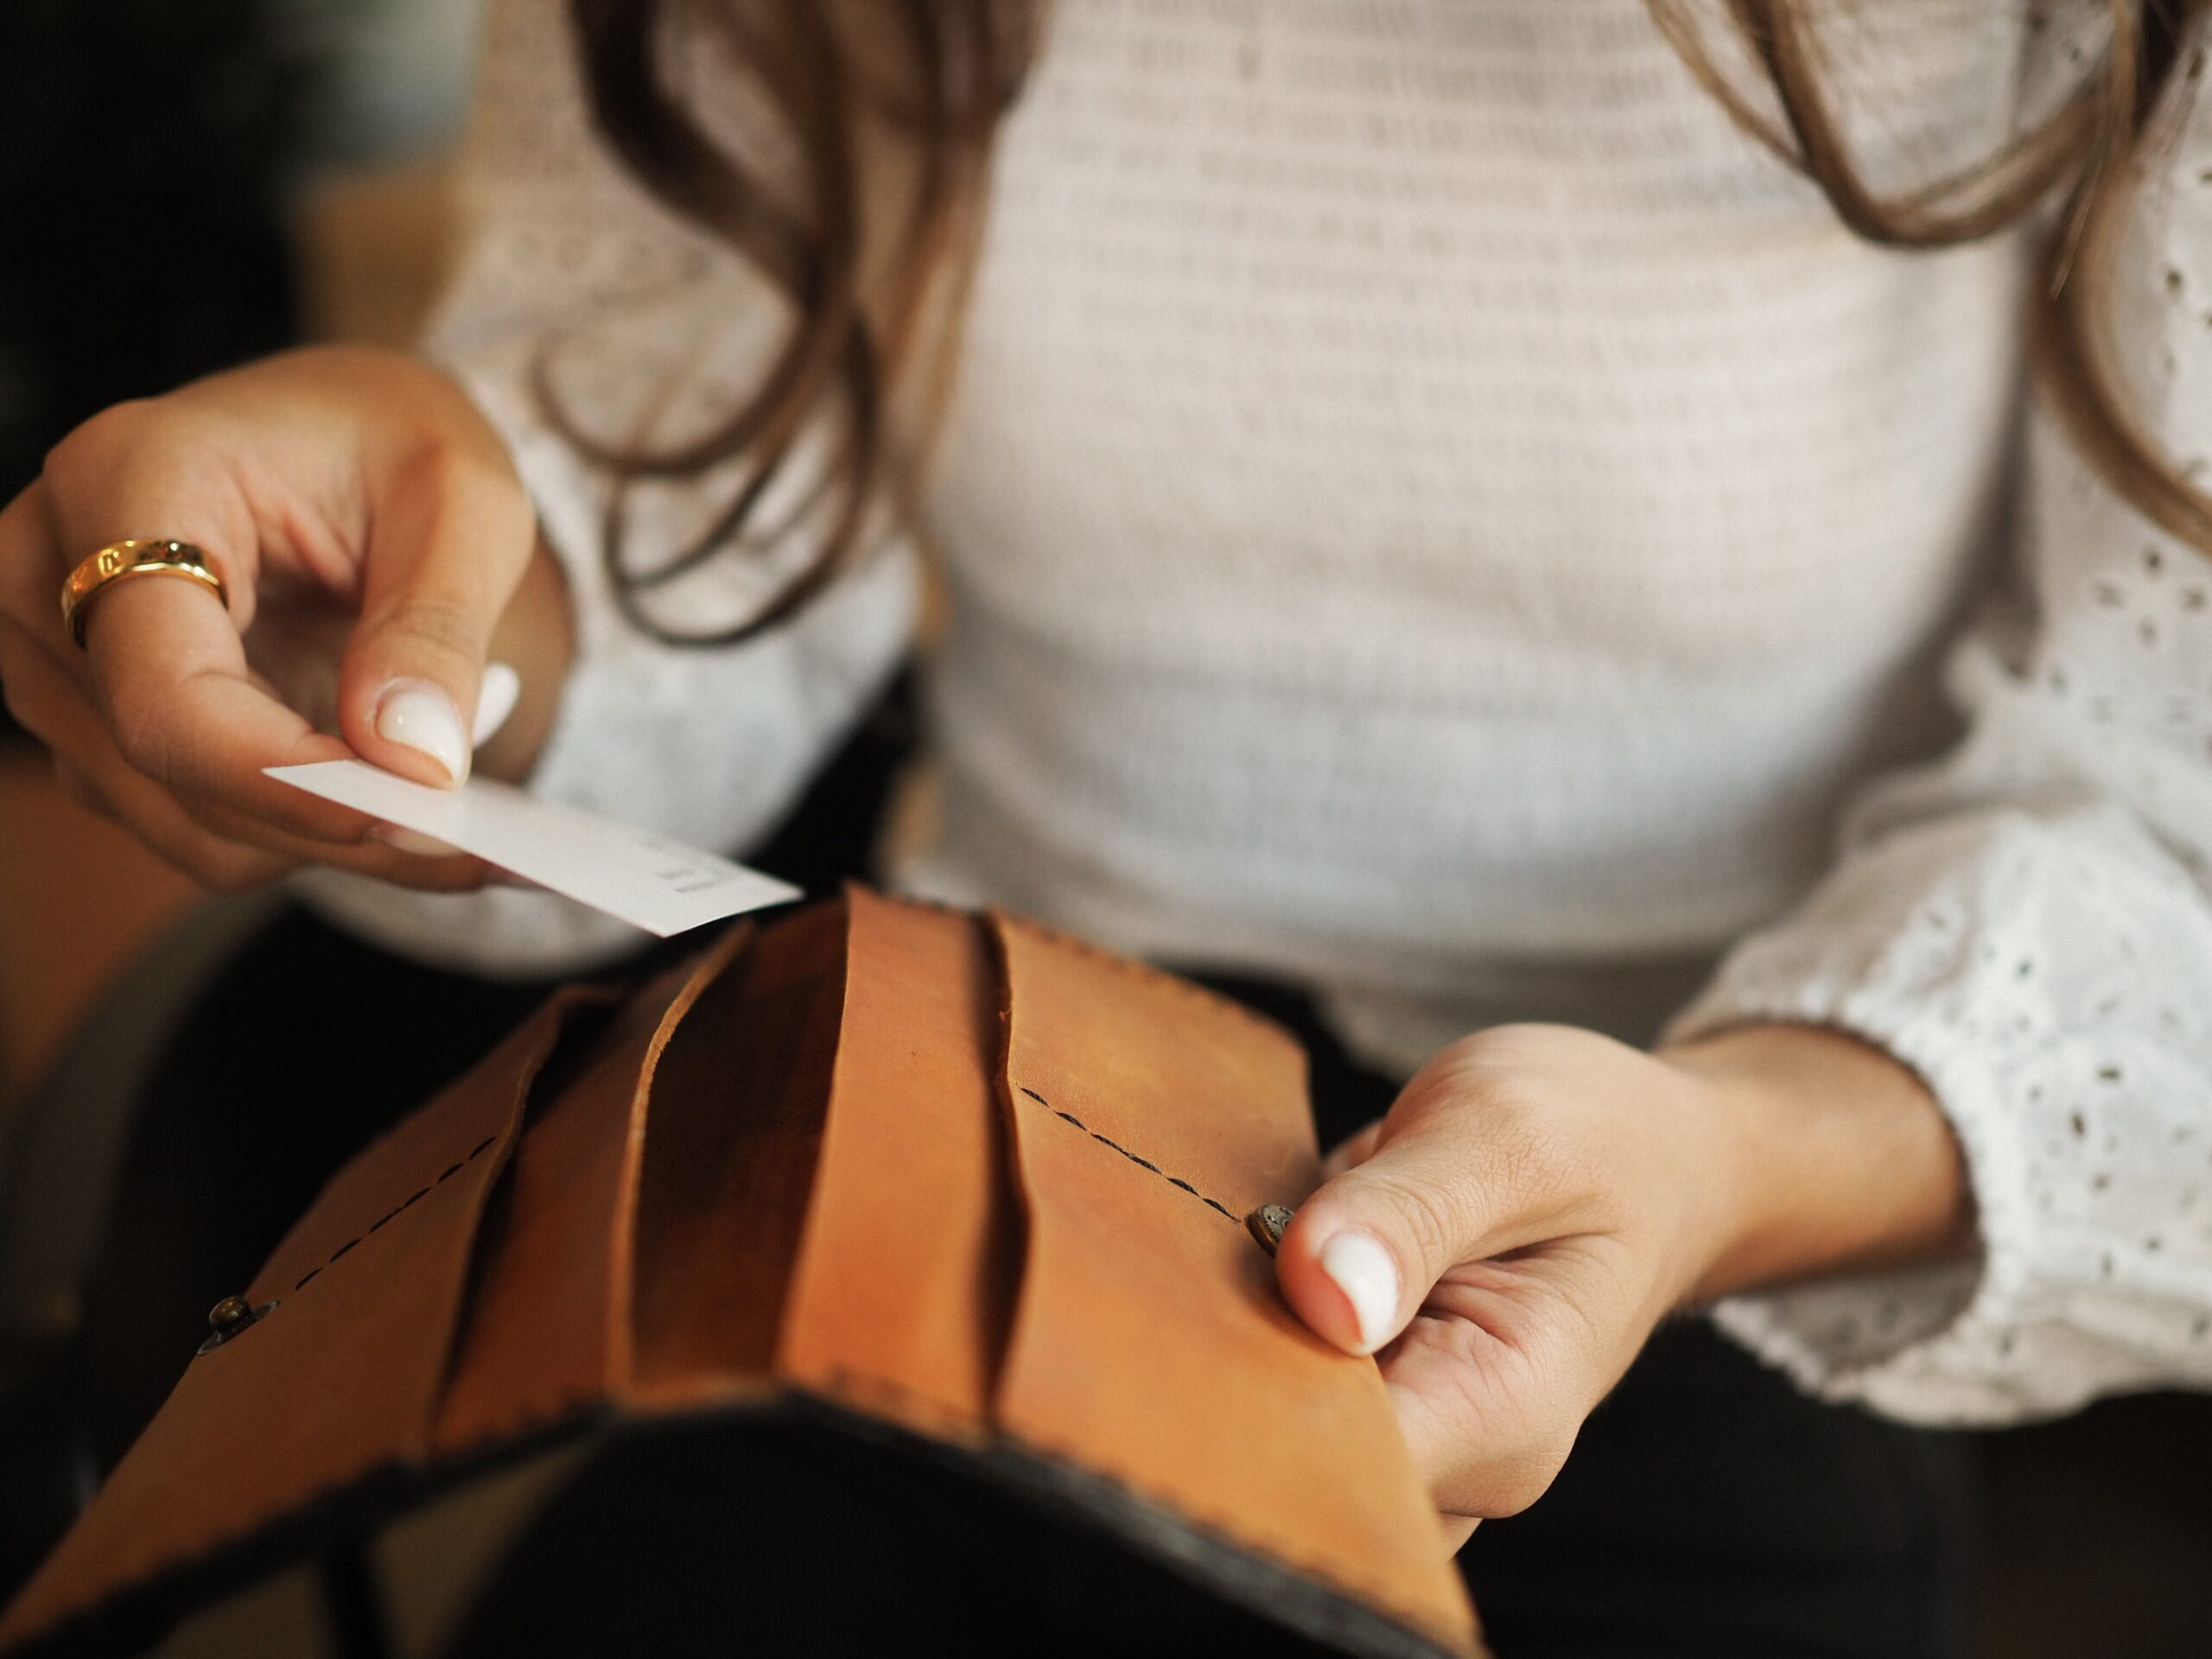 Kobieta wkładająca kartę płatniczą do portfela